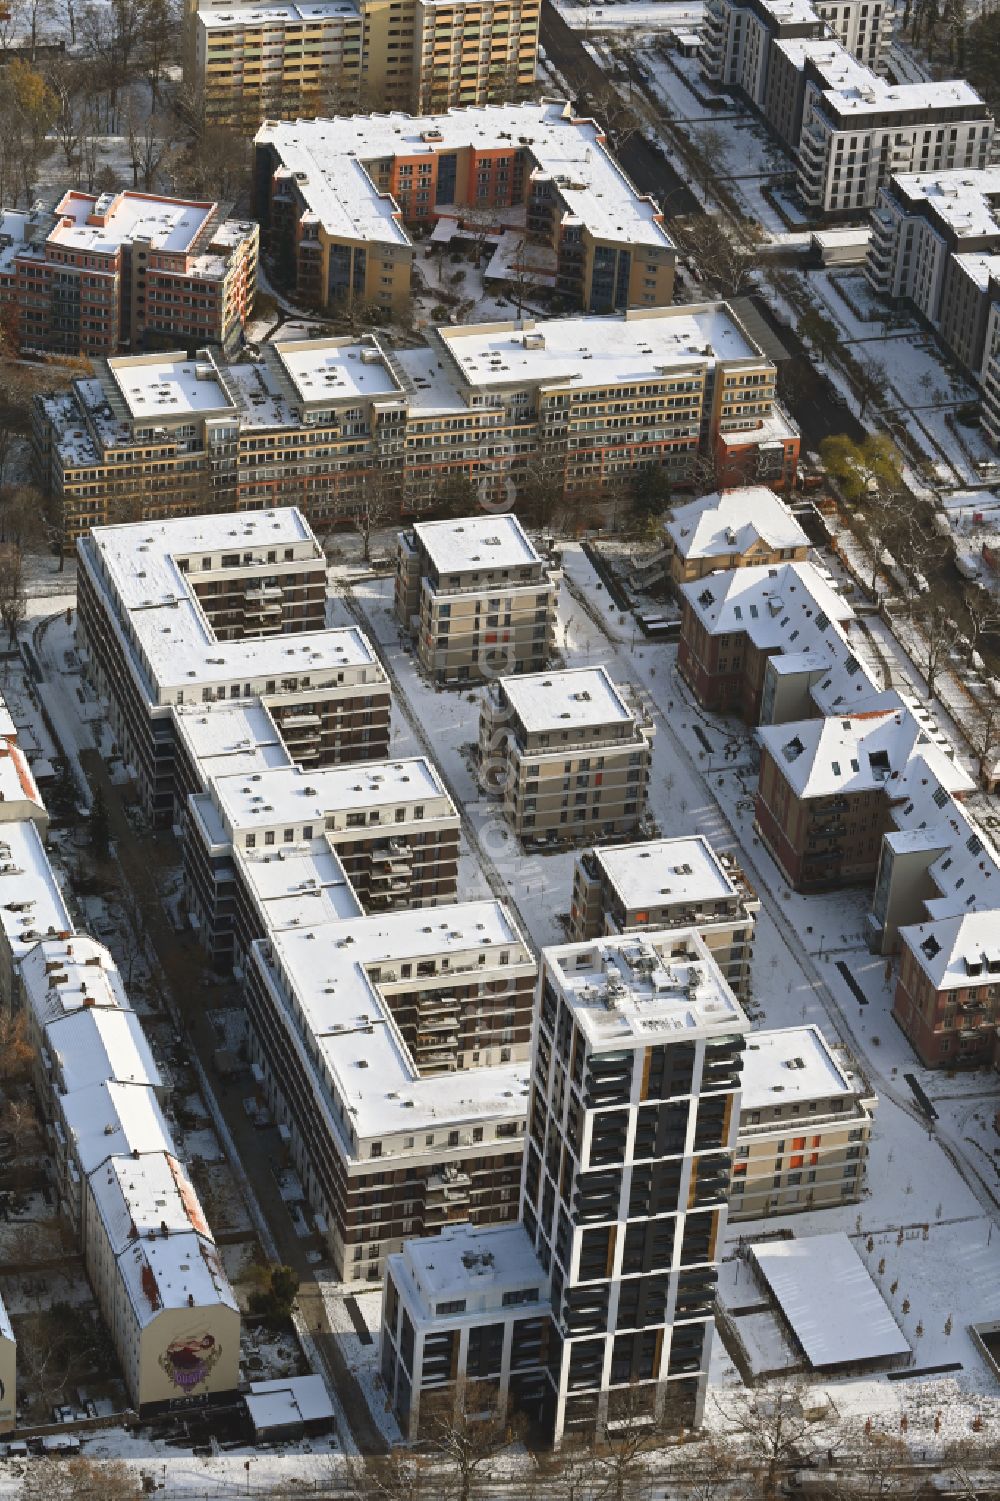 Berlin from the bird's eye view: Wintry snowy residential area on Mariendorfer Weg in the Neukoelln district of Berlin